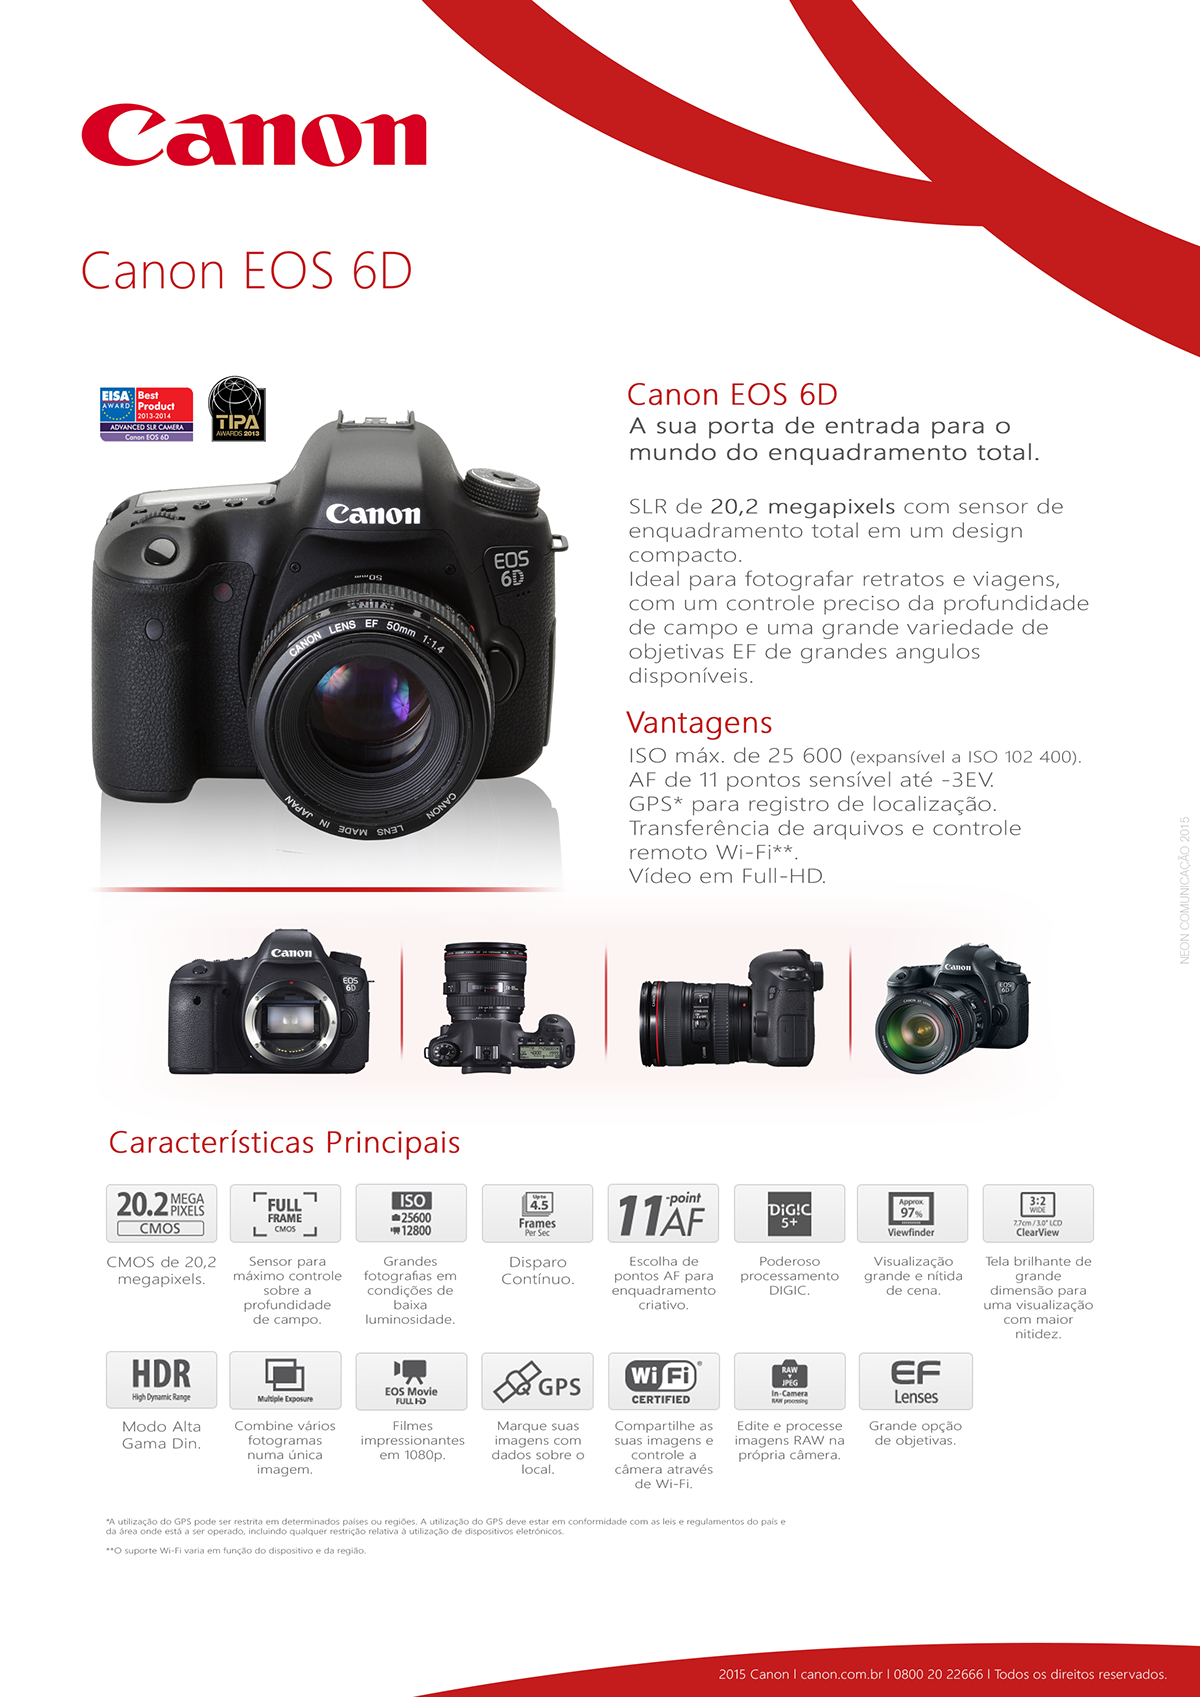 Canon EOS 6D Fotografia